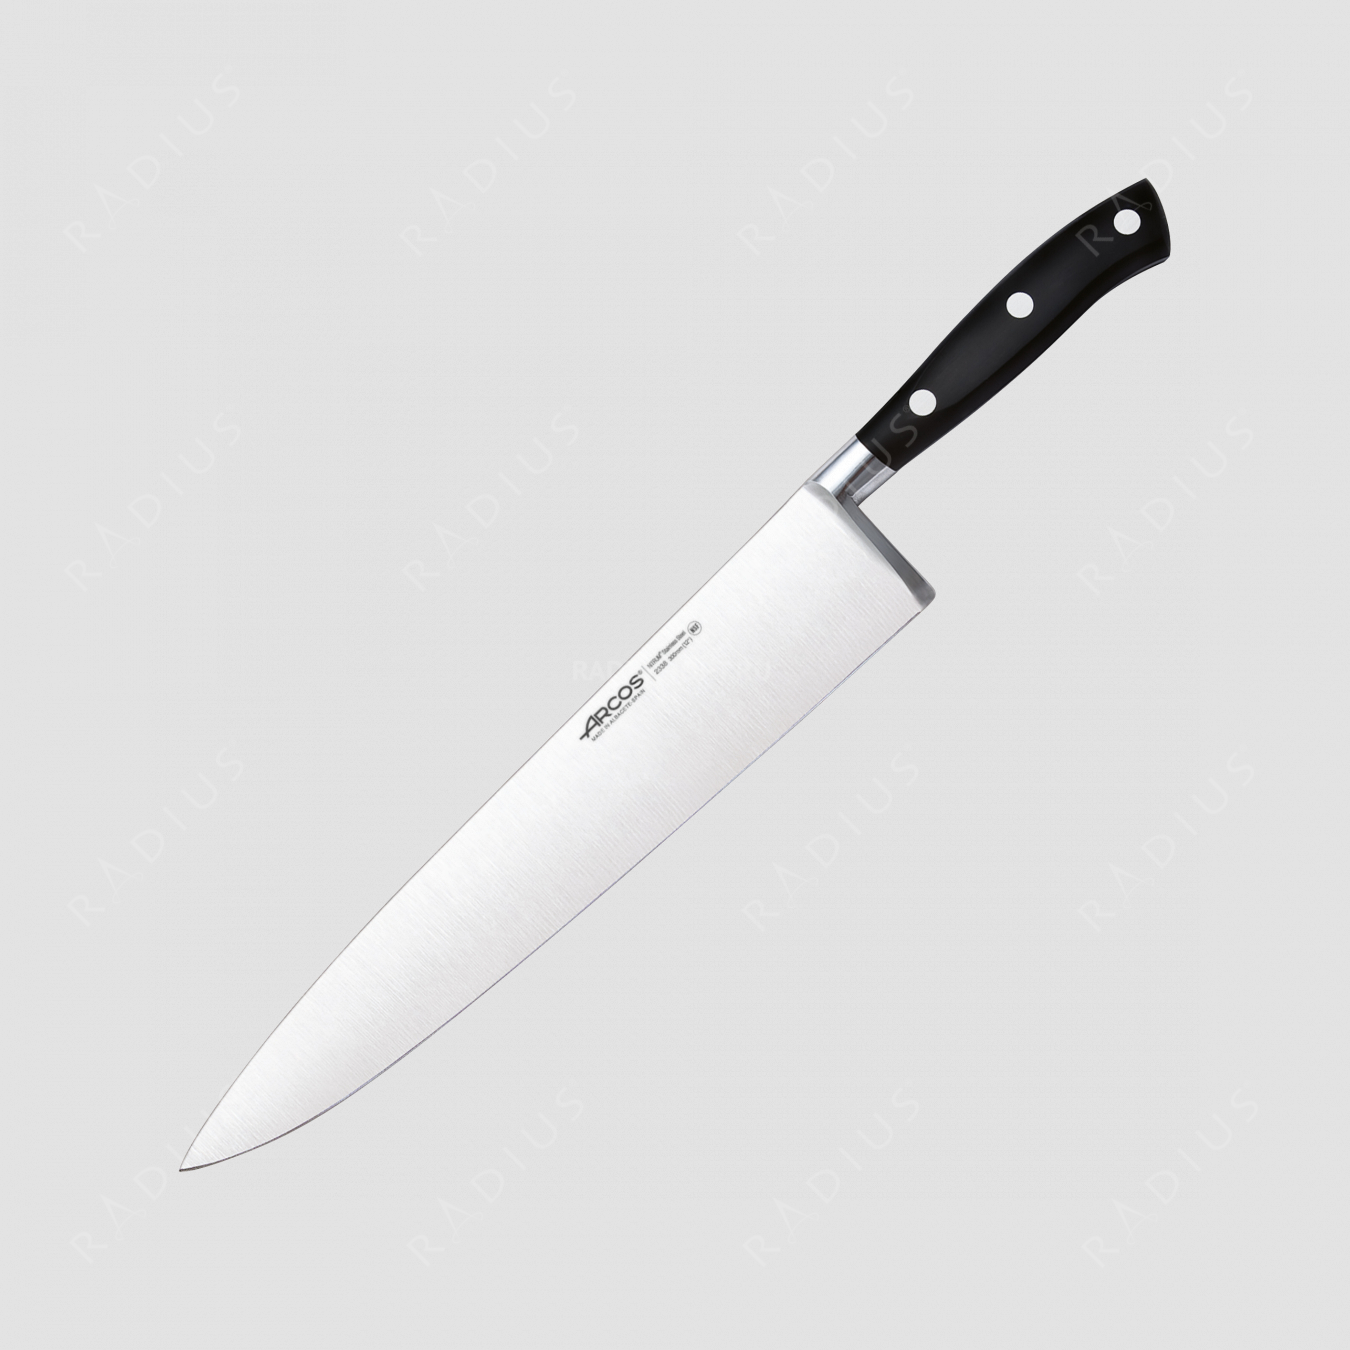 Профессиональный поварской кухонный нож 30 см, серия Riviera, ARCOS, Испания